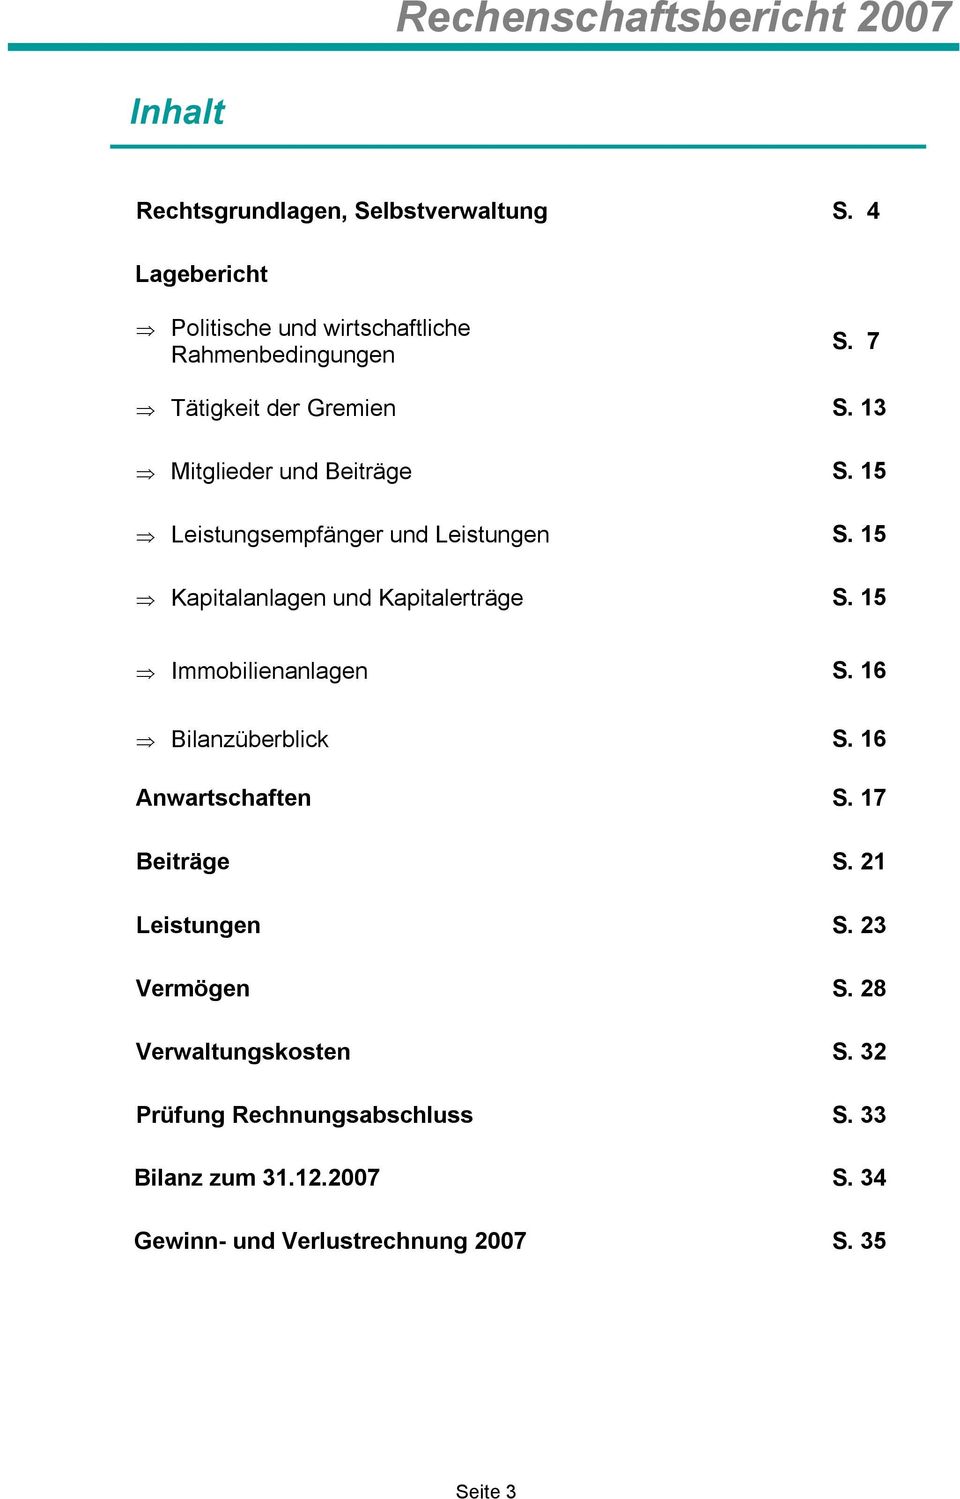 15 Kapitalanlagen und Kapitalerträge S. 15 Immobilienanlagen S. 16 Bilanzüberblick S. 16 Anwartschaften S. 17 Beiträge S.